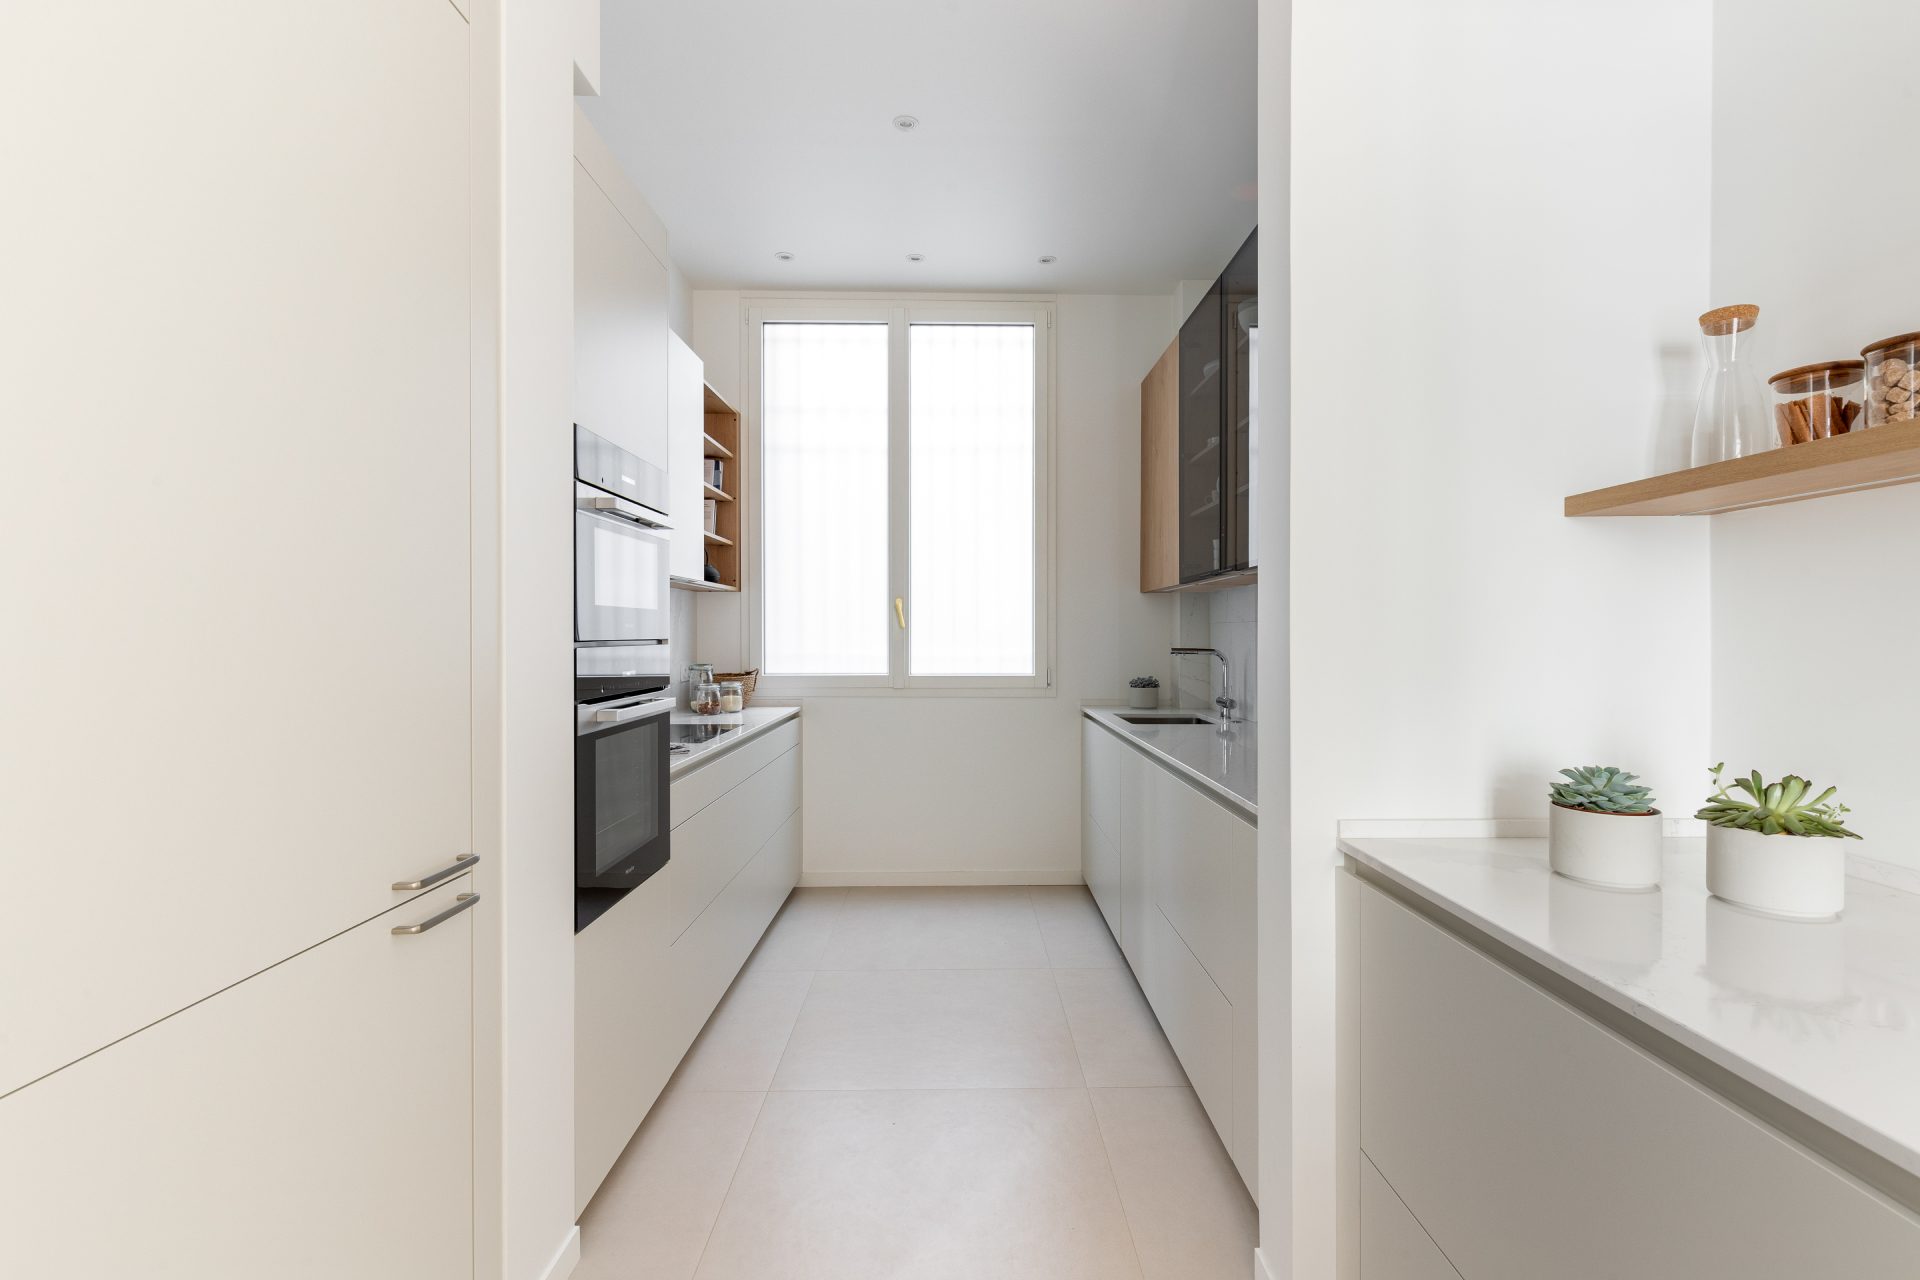 Petite cuisine blanche et bois implantée en parallèle aux lignes minimalistes